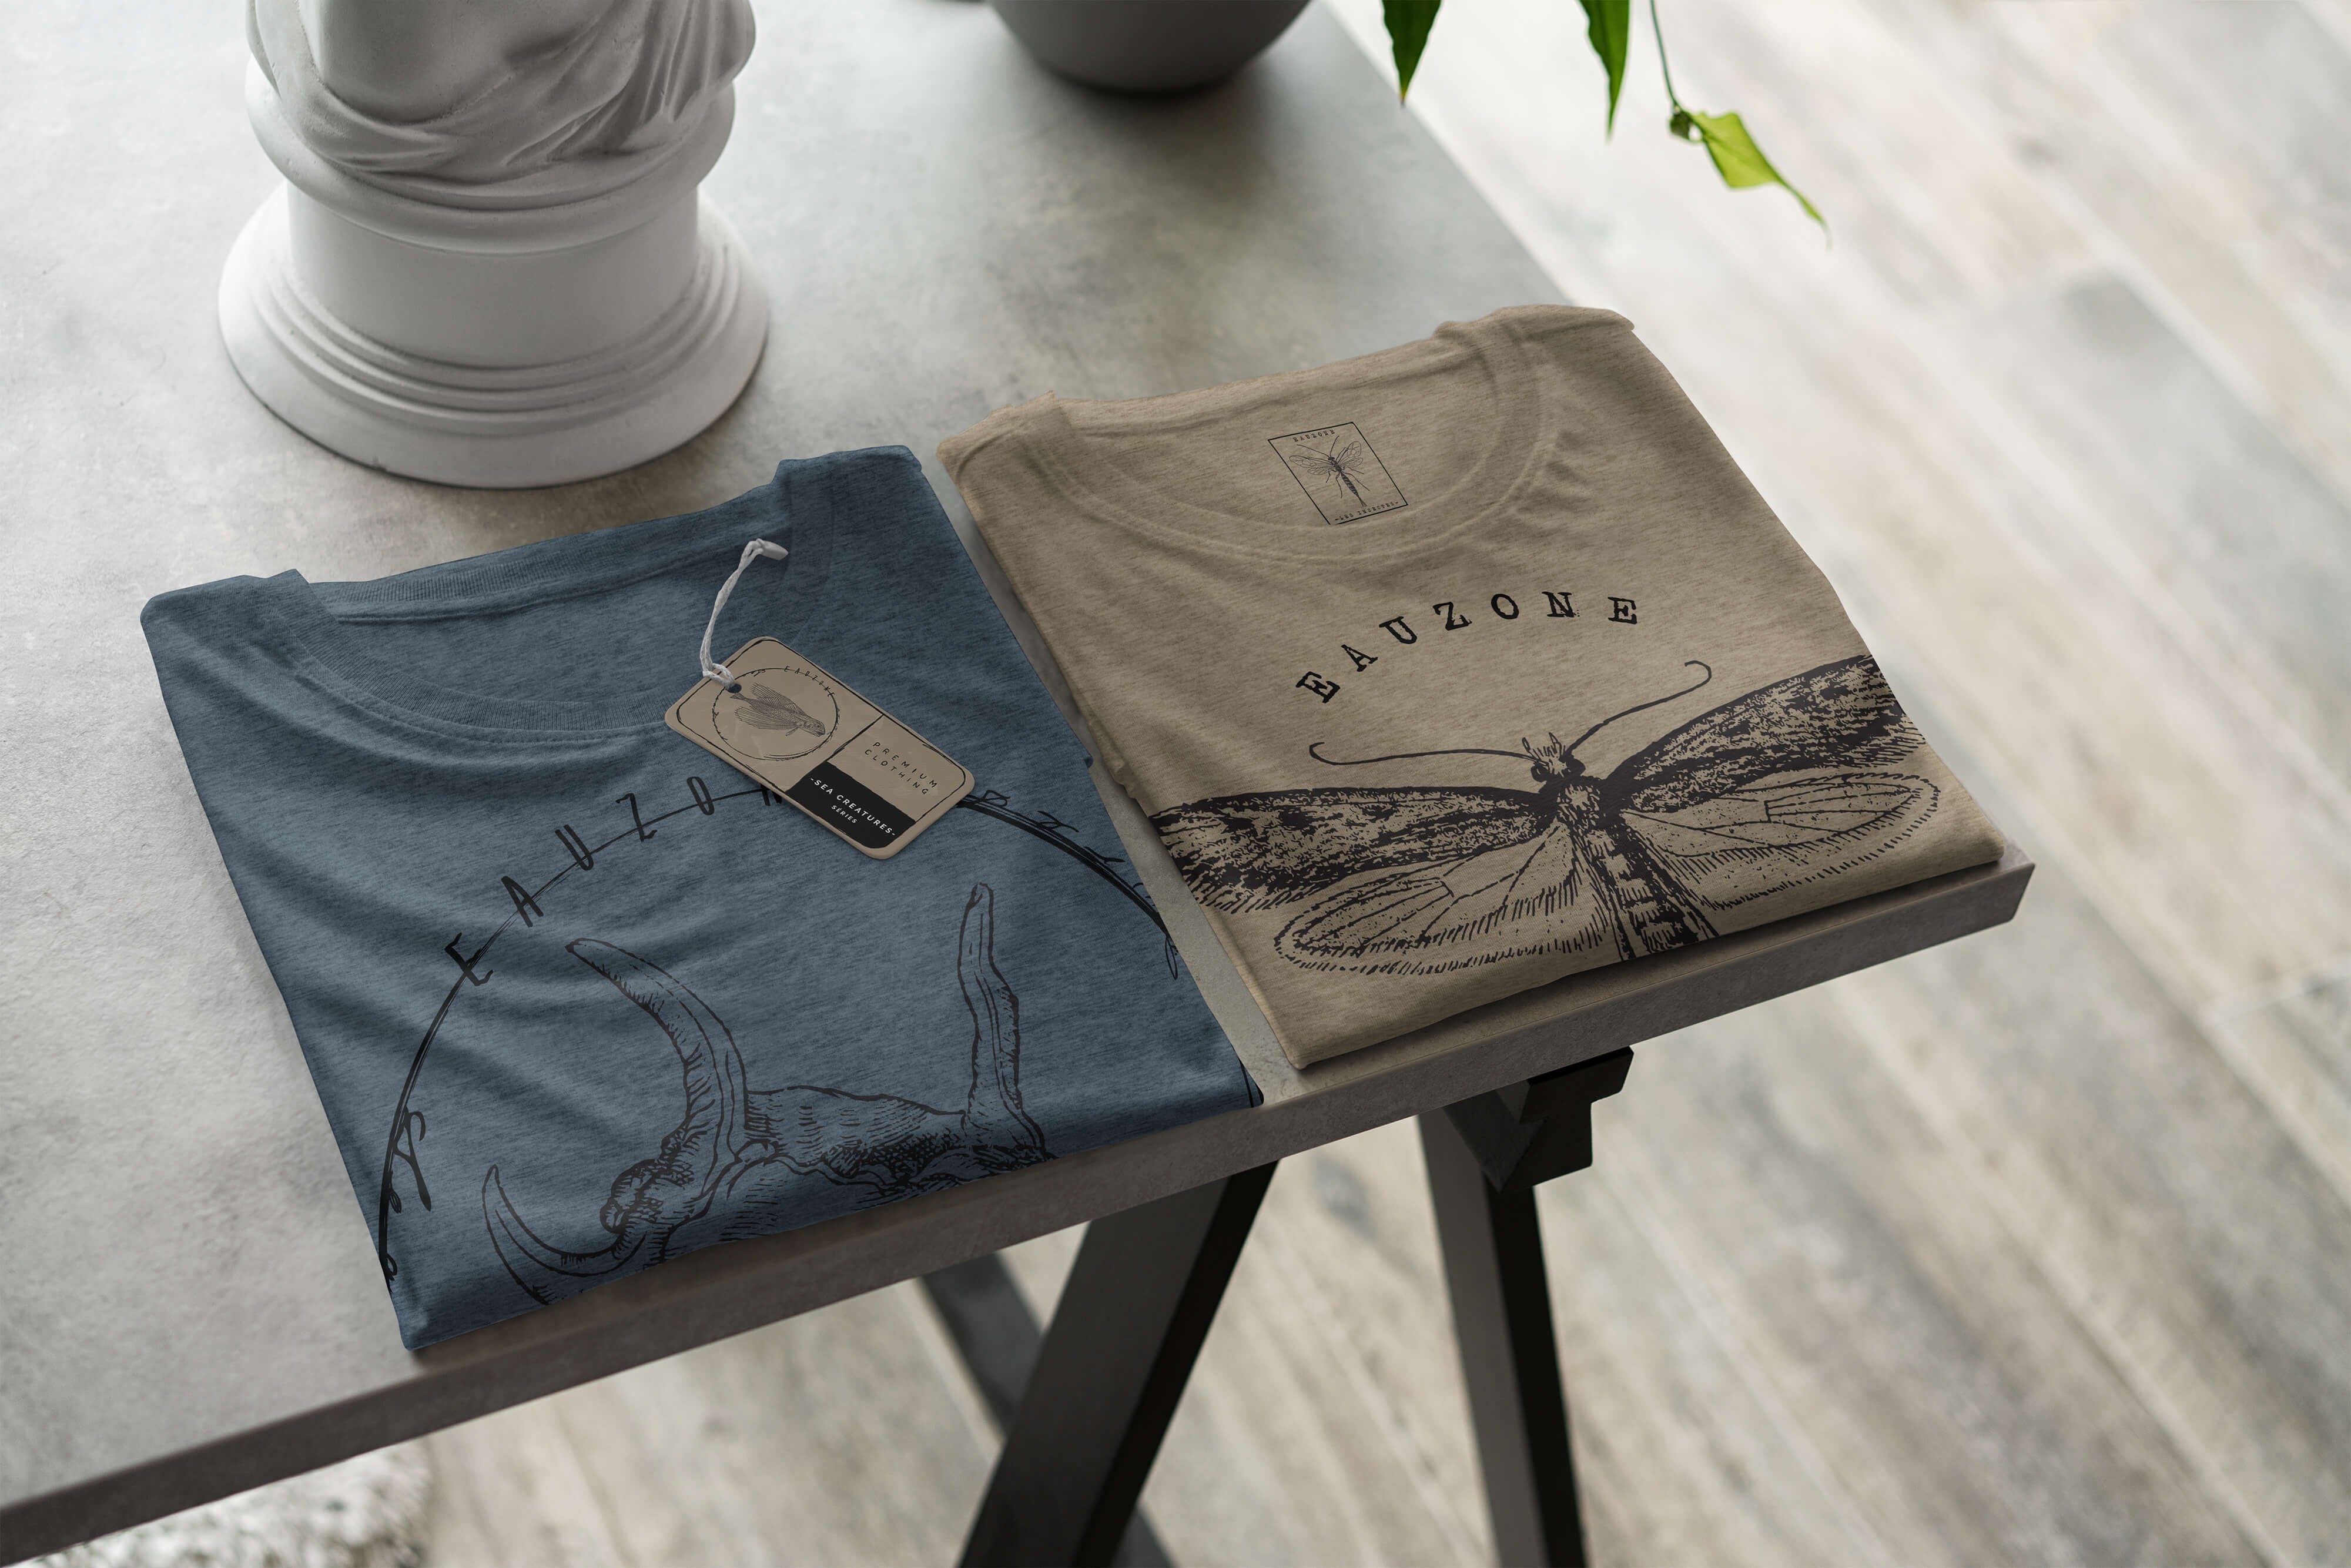 Schnitt Tiefsee Fische sportlicher Struktur - 050 T-Shirt feine Art Sinus Indigo und Sea T-Shirt Serie: Creatures, / Sea